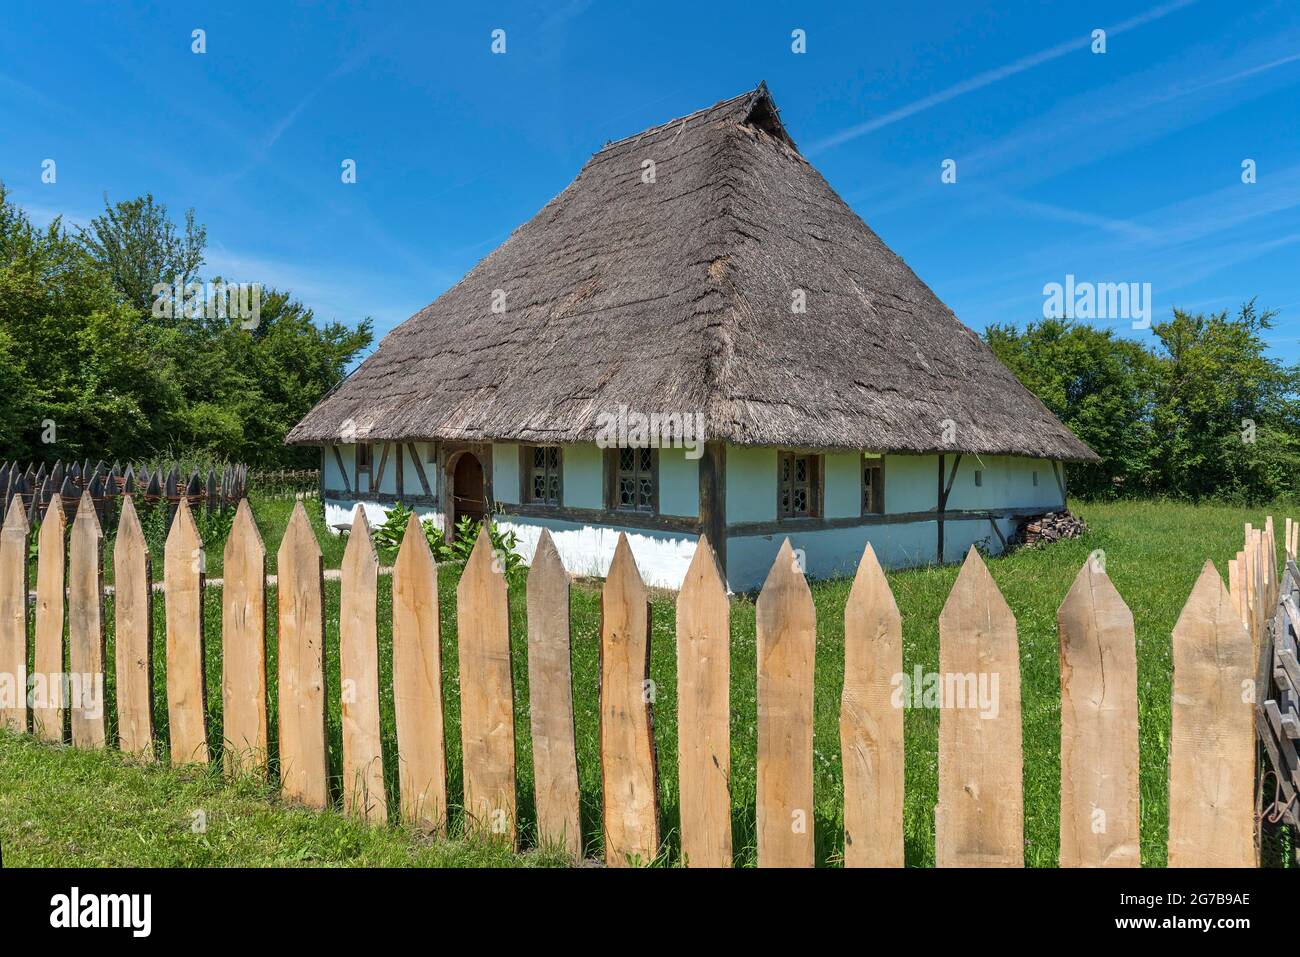 Maison suédoise, construite en 1554, petite ferme de style architectural médiéval tardif, Musée Franconien en plein air, Bad Windsheim, moyenne-Franconie Banque D'Images